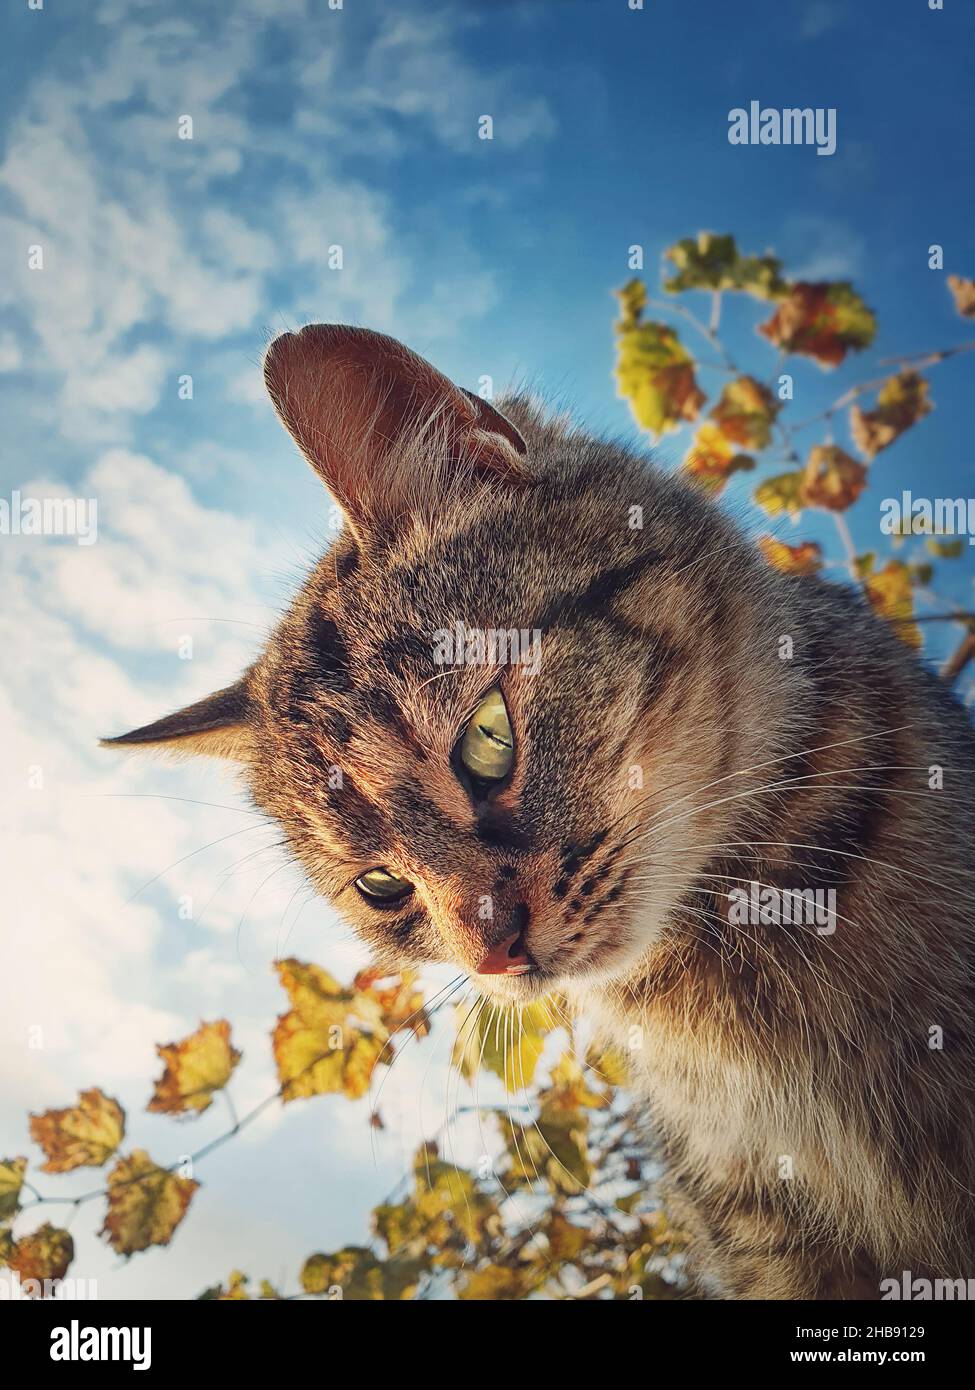 Vue rapprochée CAT.Joli chaton rayé brun sur les feuilles d'automne et fond bleu ciel Banque D'Images